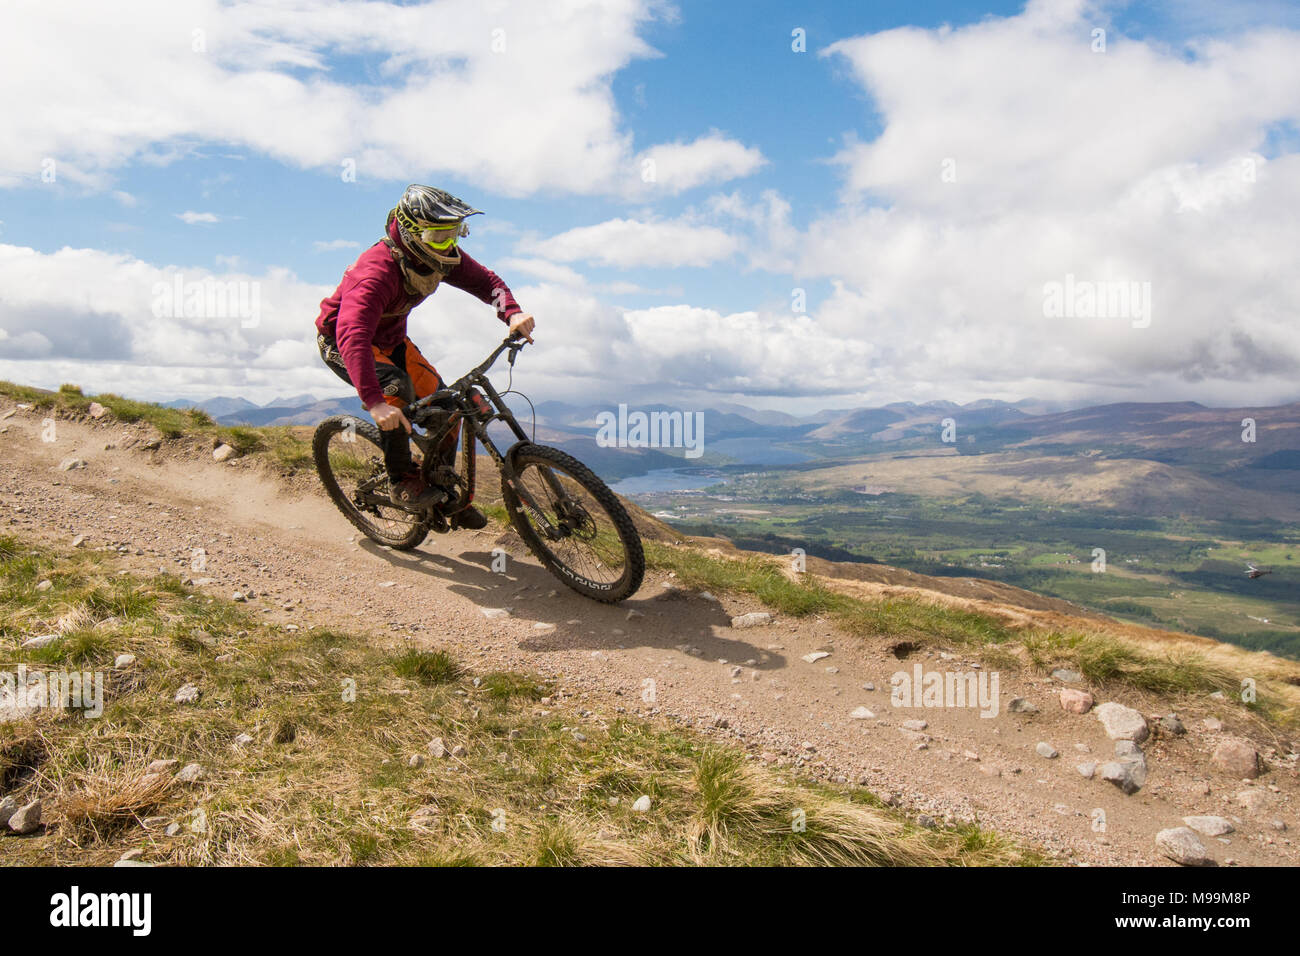 Mountainbiker auf Downhill Trail, Nevis Range, Fort William, Schottland, UK  Stockfotografie - Alamy